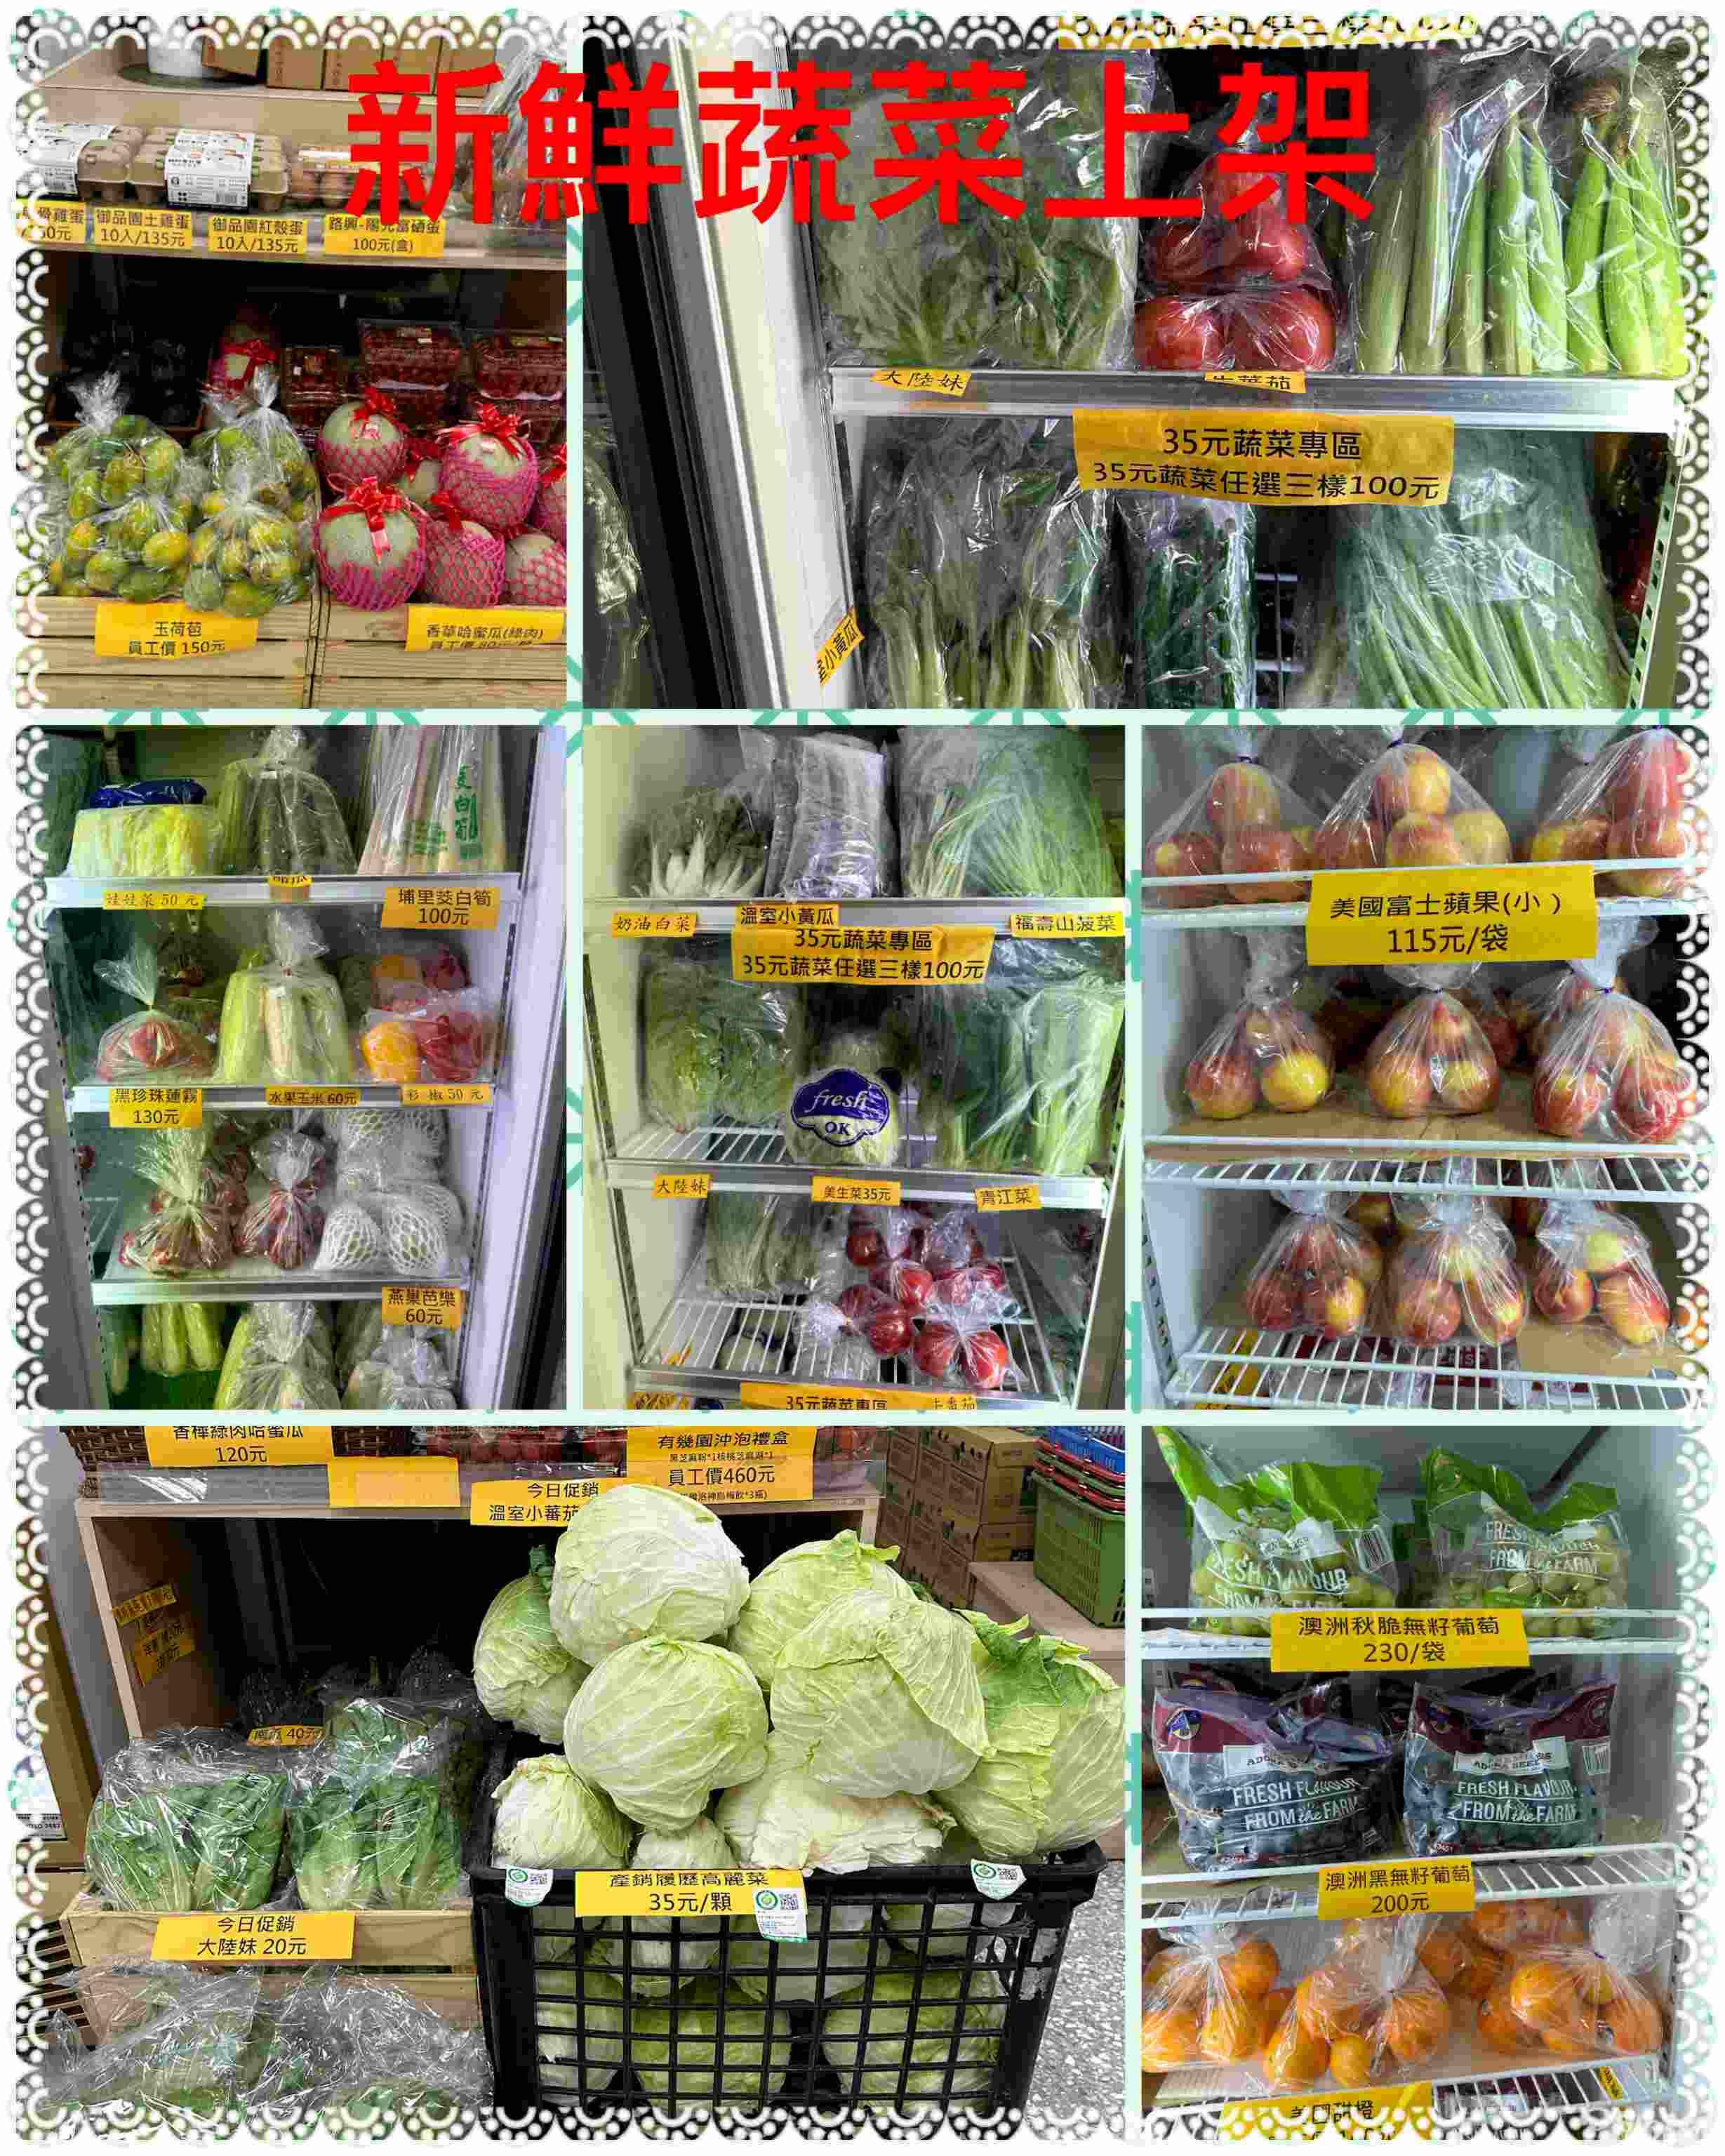 每週推出促銷特價商品供社員選購，每日提供新鮮蔬菜(蔬果協會)/水果(觀展物流公司進口水果)/海鮮/魚貨鮮物配提供員工多樣品項不同選購。